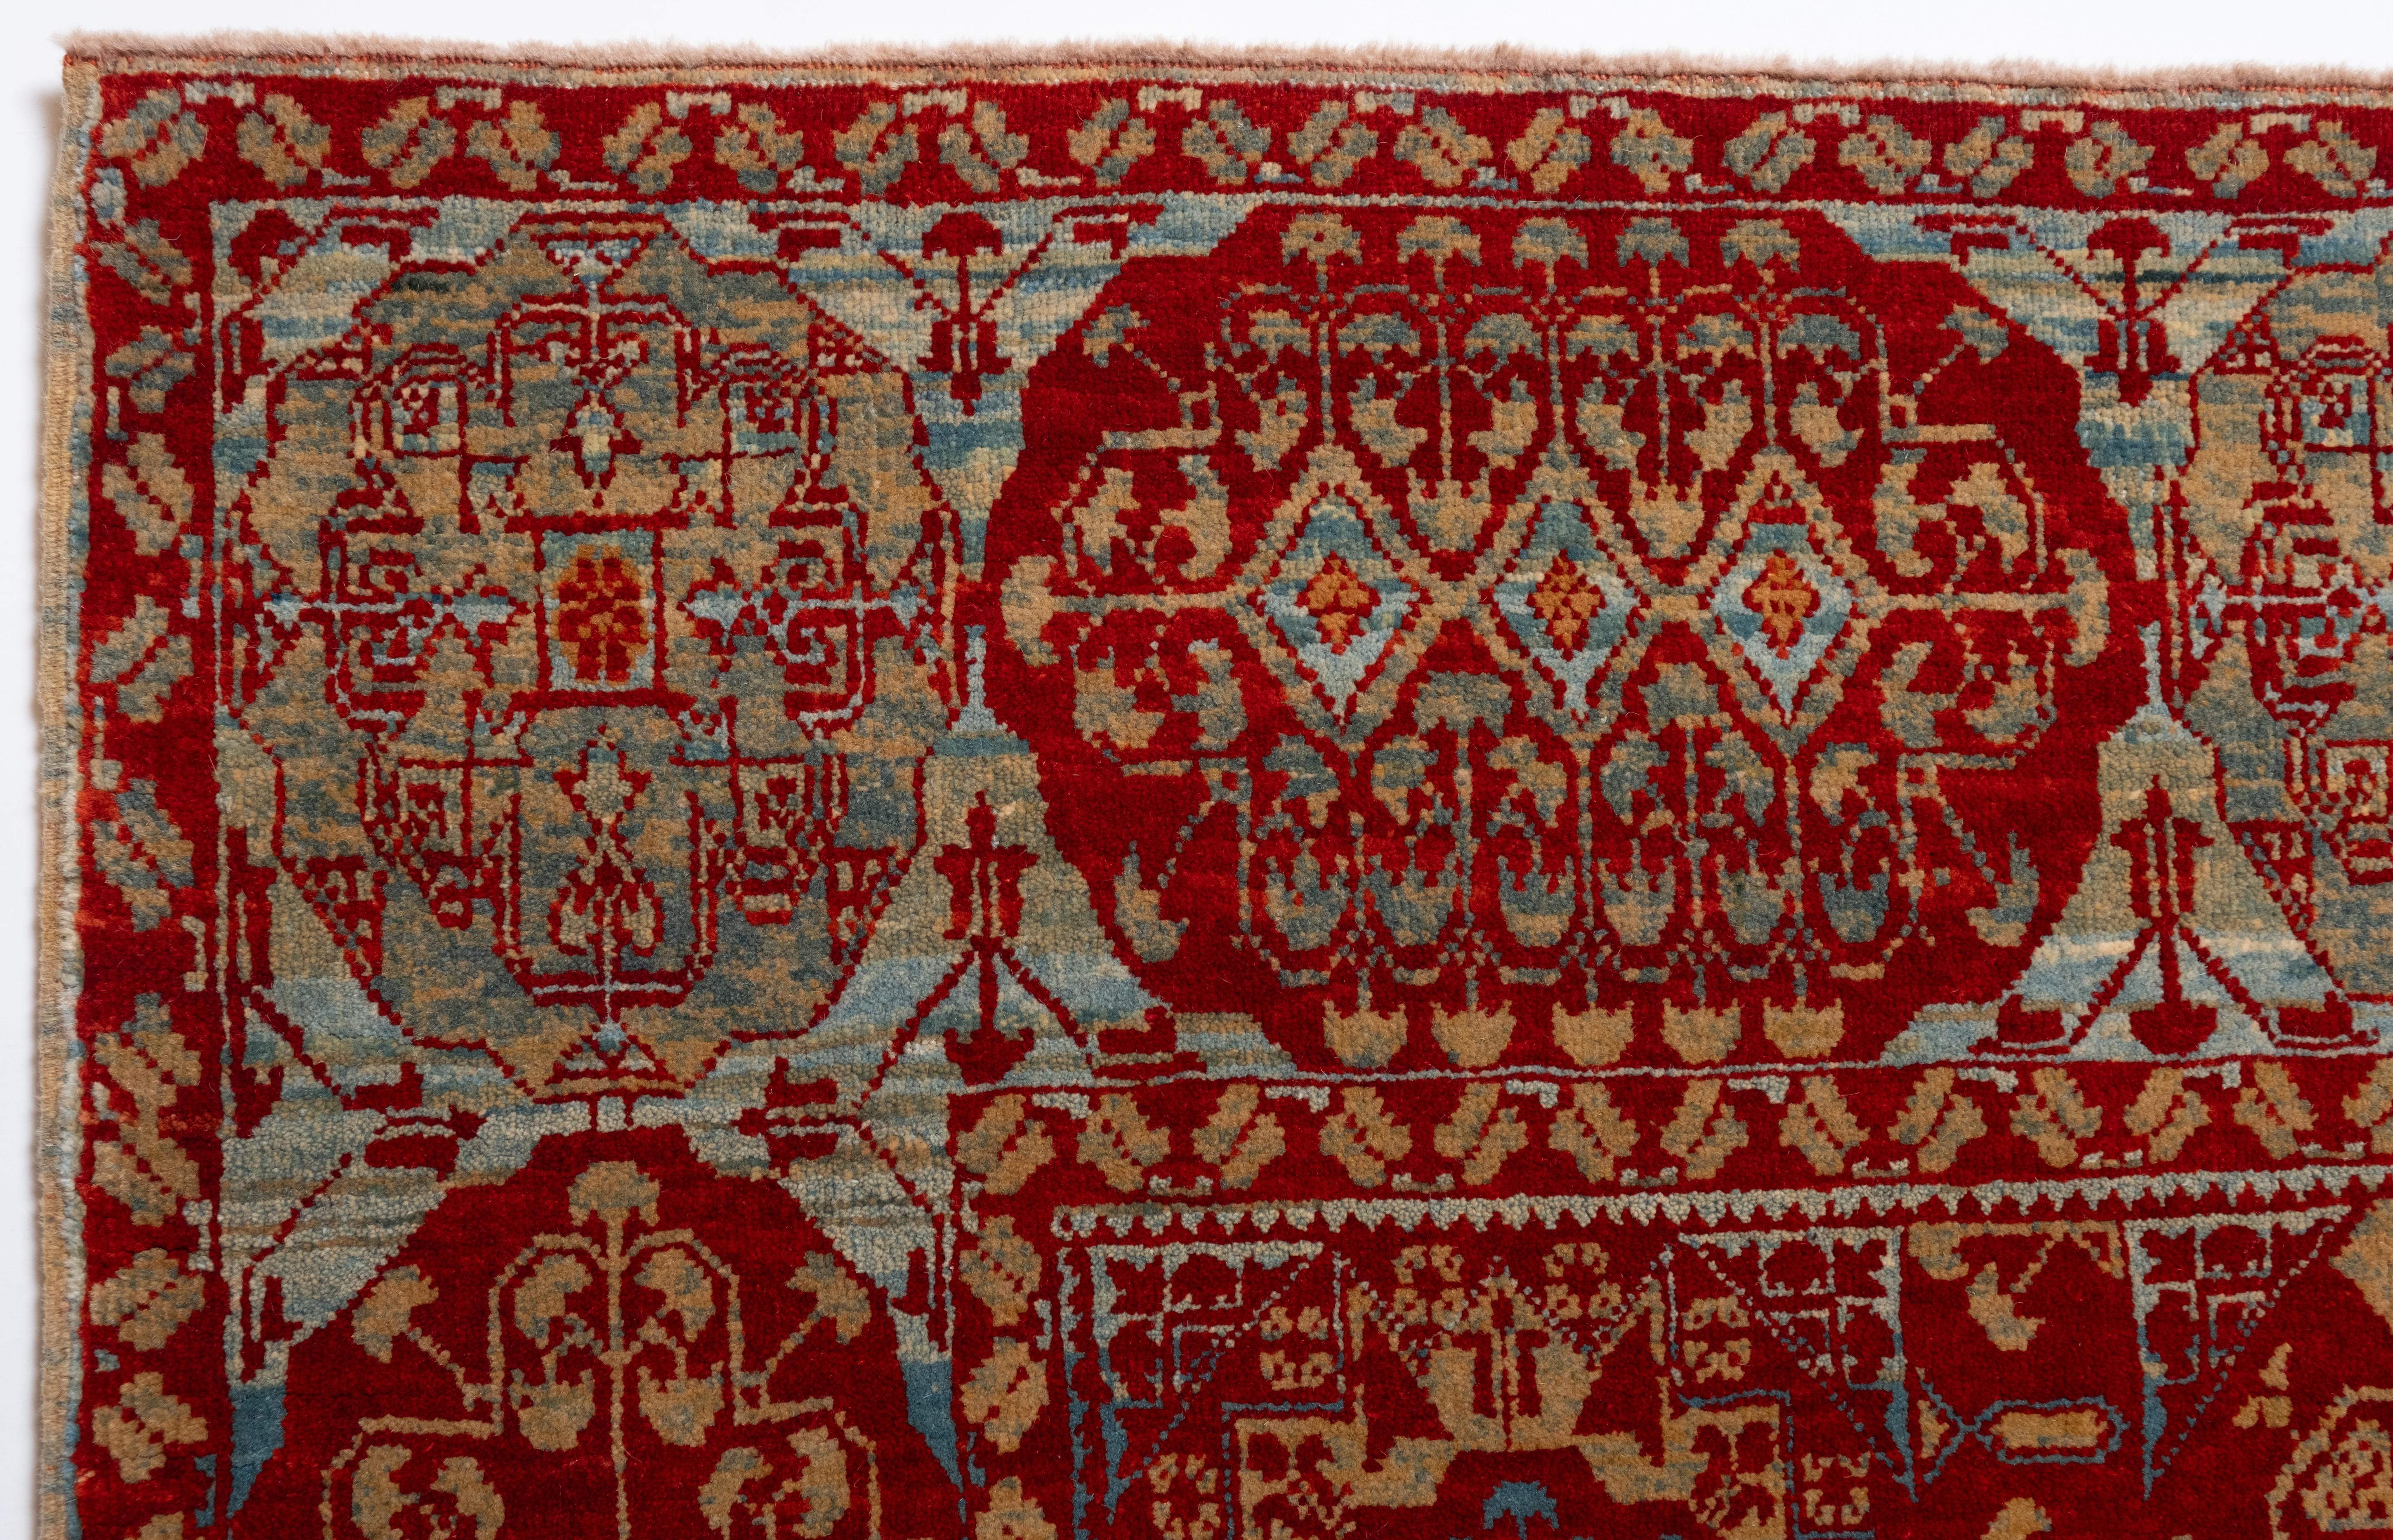 La source du tapis provient du livre Renaissance of Islam, Art of the Mamluks, Esin Atil, Smithsonian Institution Press, Washington D.C., 1981 nr.125. Il s'agit d'un tapis à motif de coupe, datant de la fin du XVe siècle et provenant du sultan